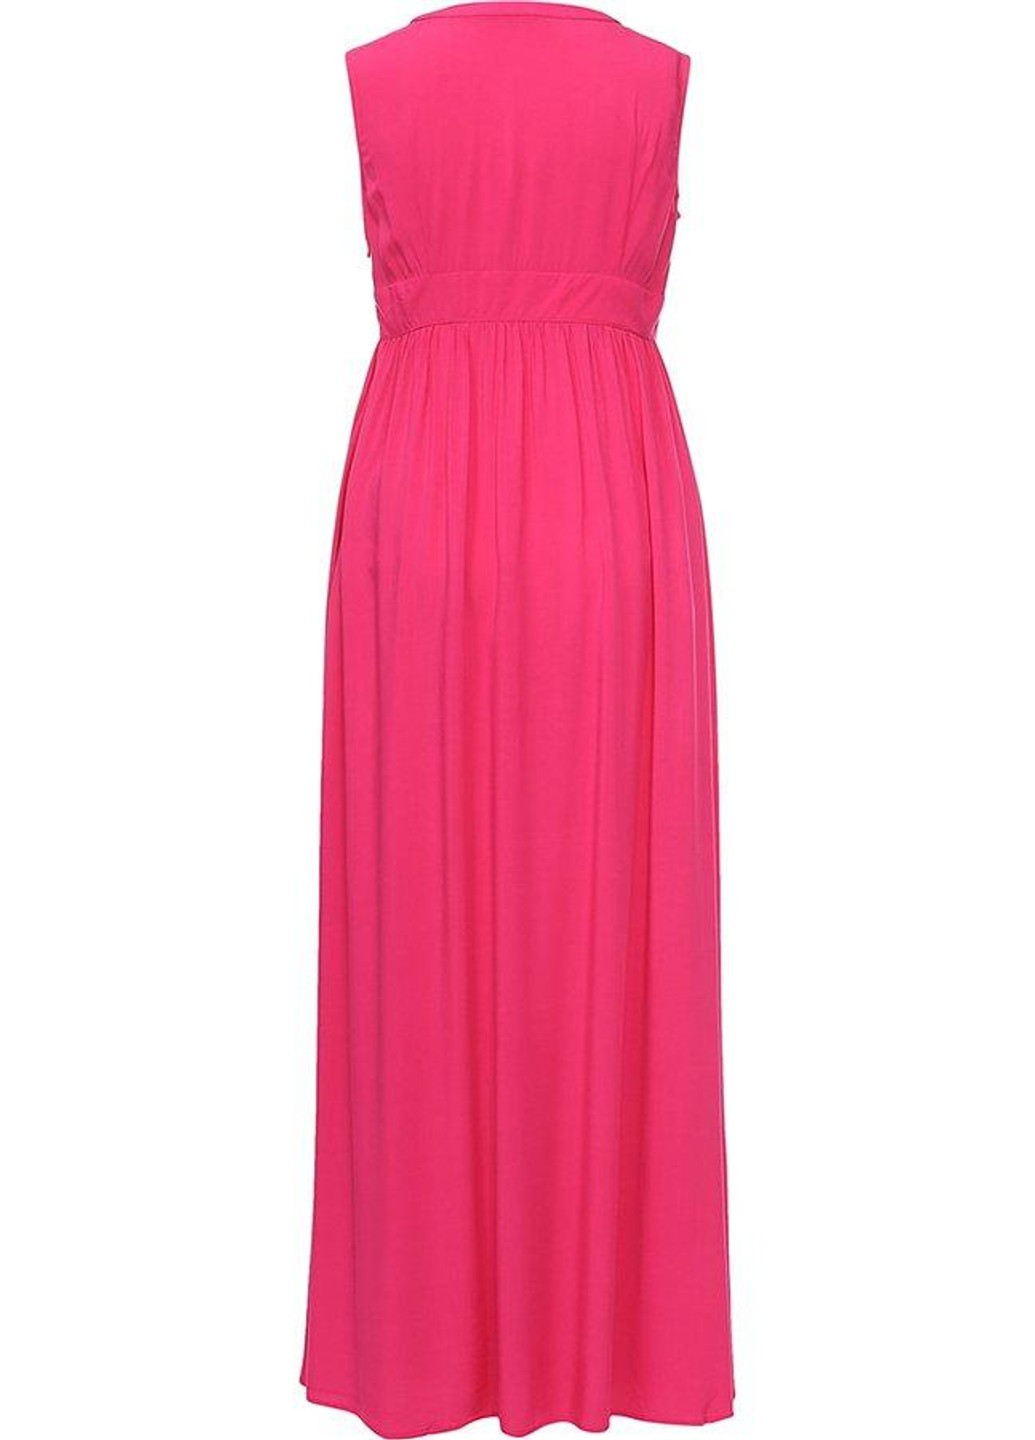 Розовое повседневный платье s17-14029-802 а-силуэт Finn Flare однотонное